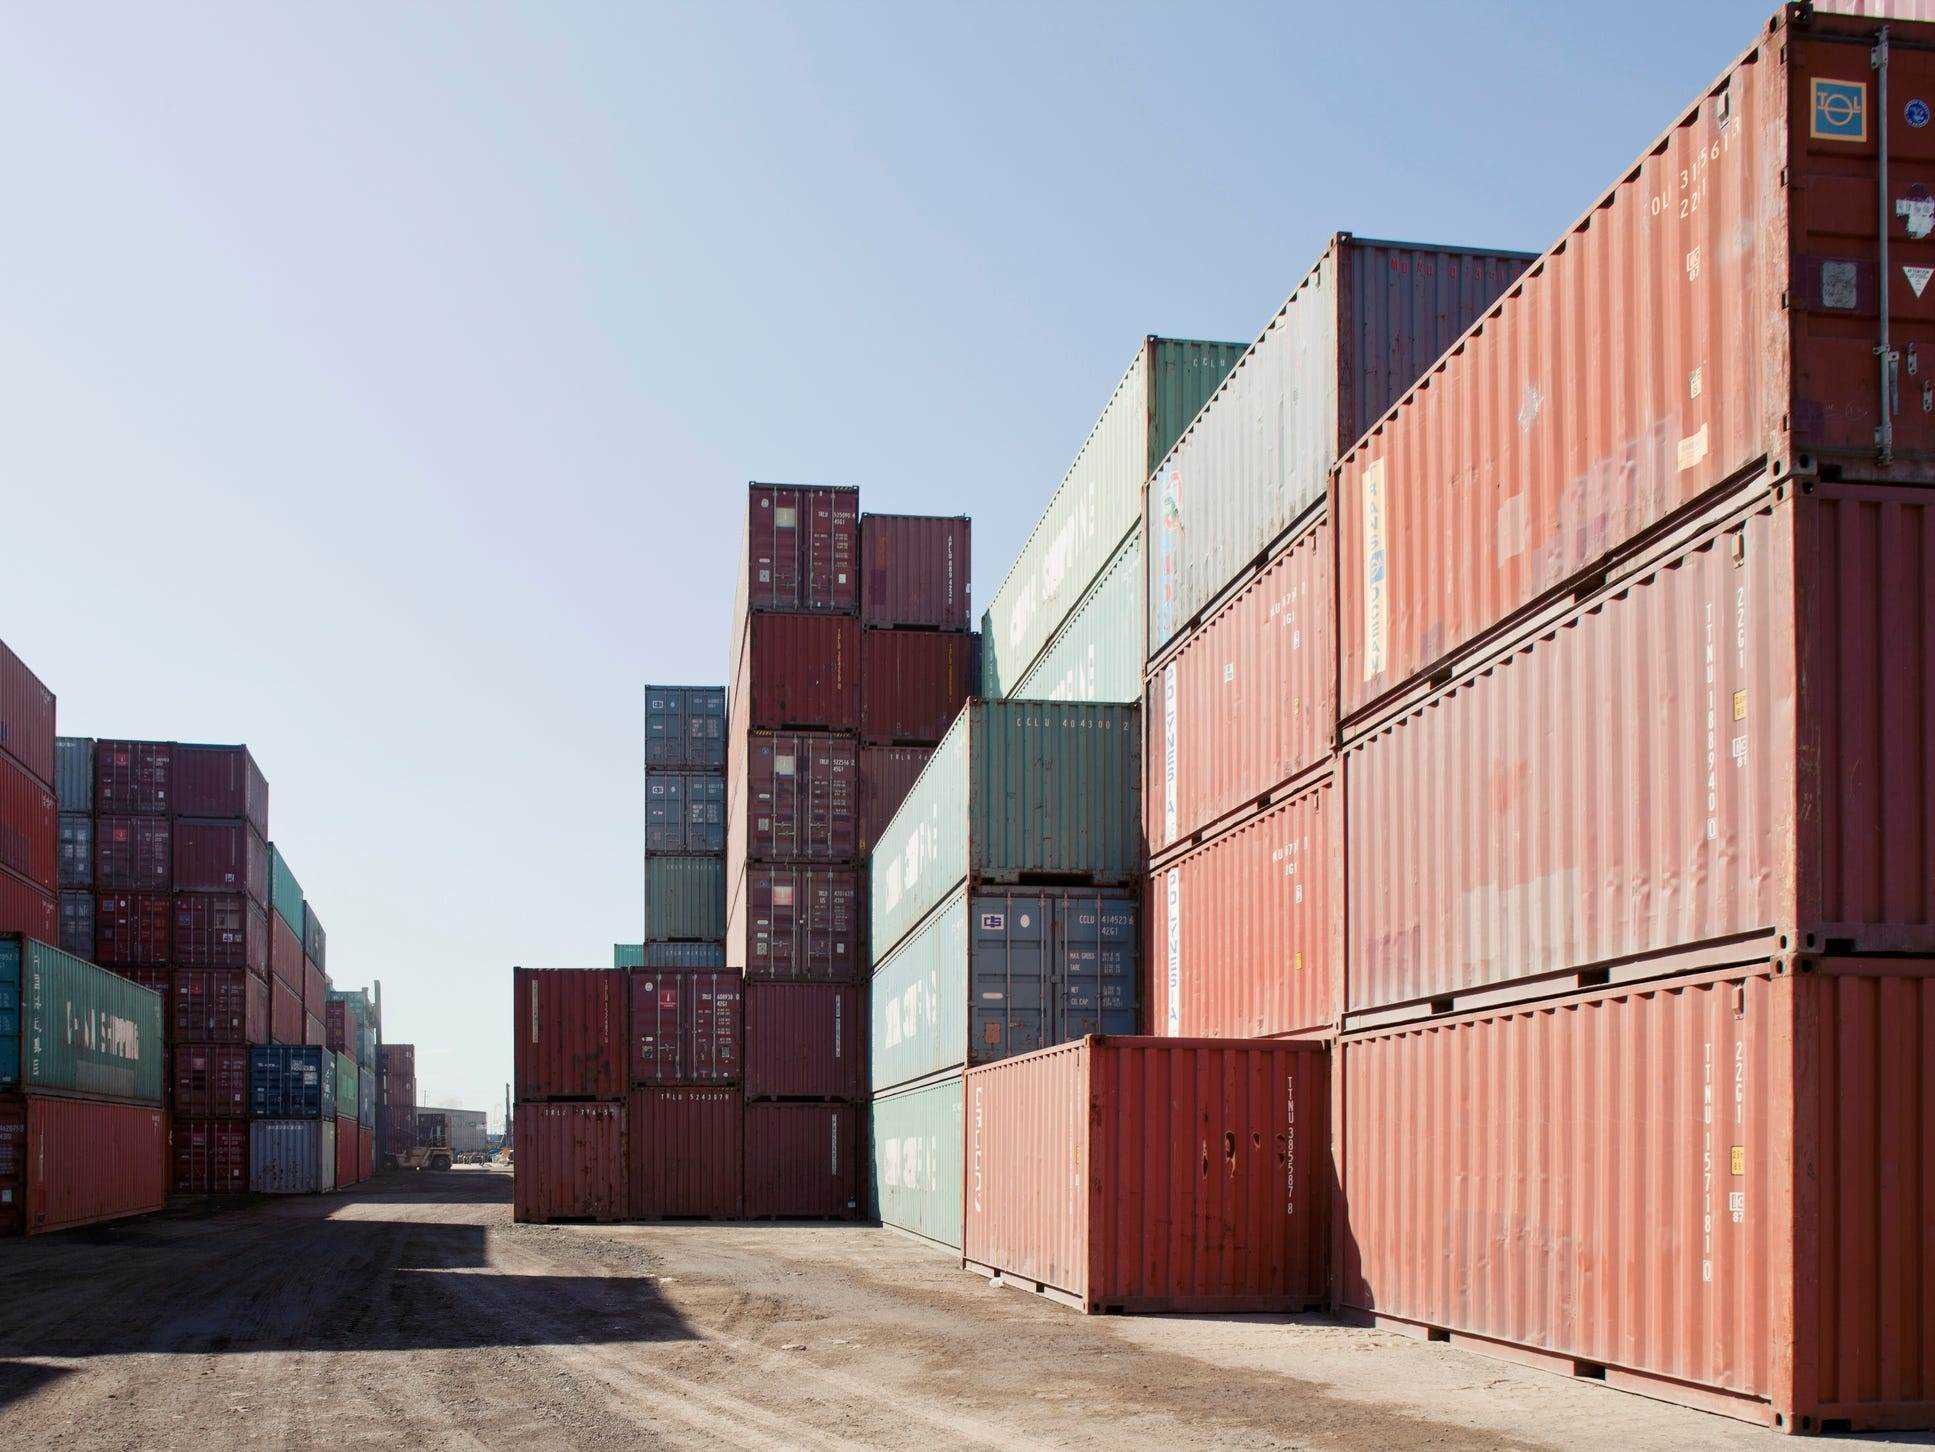 Große Container auf kommerziellem Dock in Long Beach, Kalifornien.